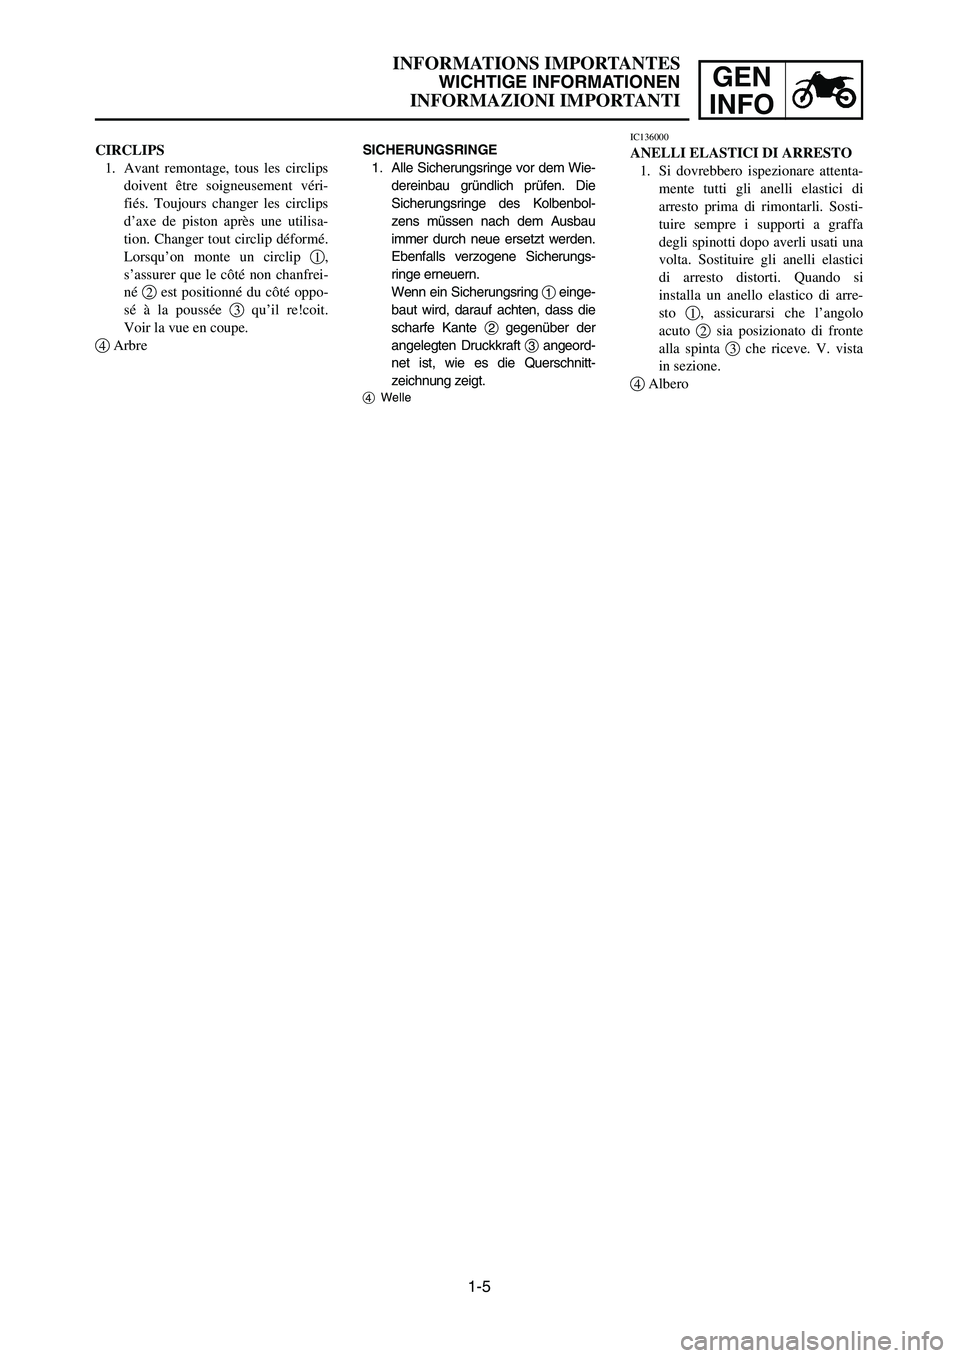 YAMAHA YZ250LC 2006  Manuale duso (in Italian) 1-5
INFORMATIONS IMPORTANTES
WICHTIGE INFORMATIONEN
INFORMAZIONI IMPORTANTI
GEN
INFO
SICHERUNGSRINGE
1. Alle Sicherungsringe vor dem Wie-
dereinbau gründlich prüfen. Die
Sicherungsringe des Kolbenbo